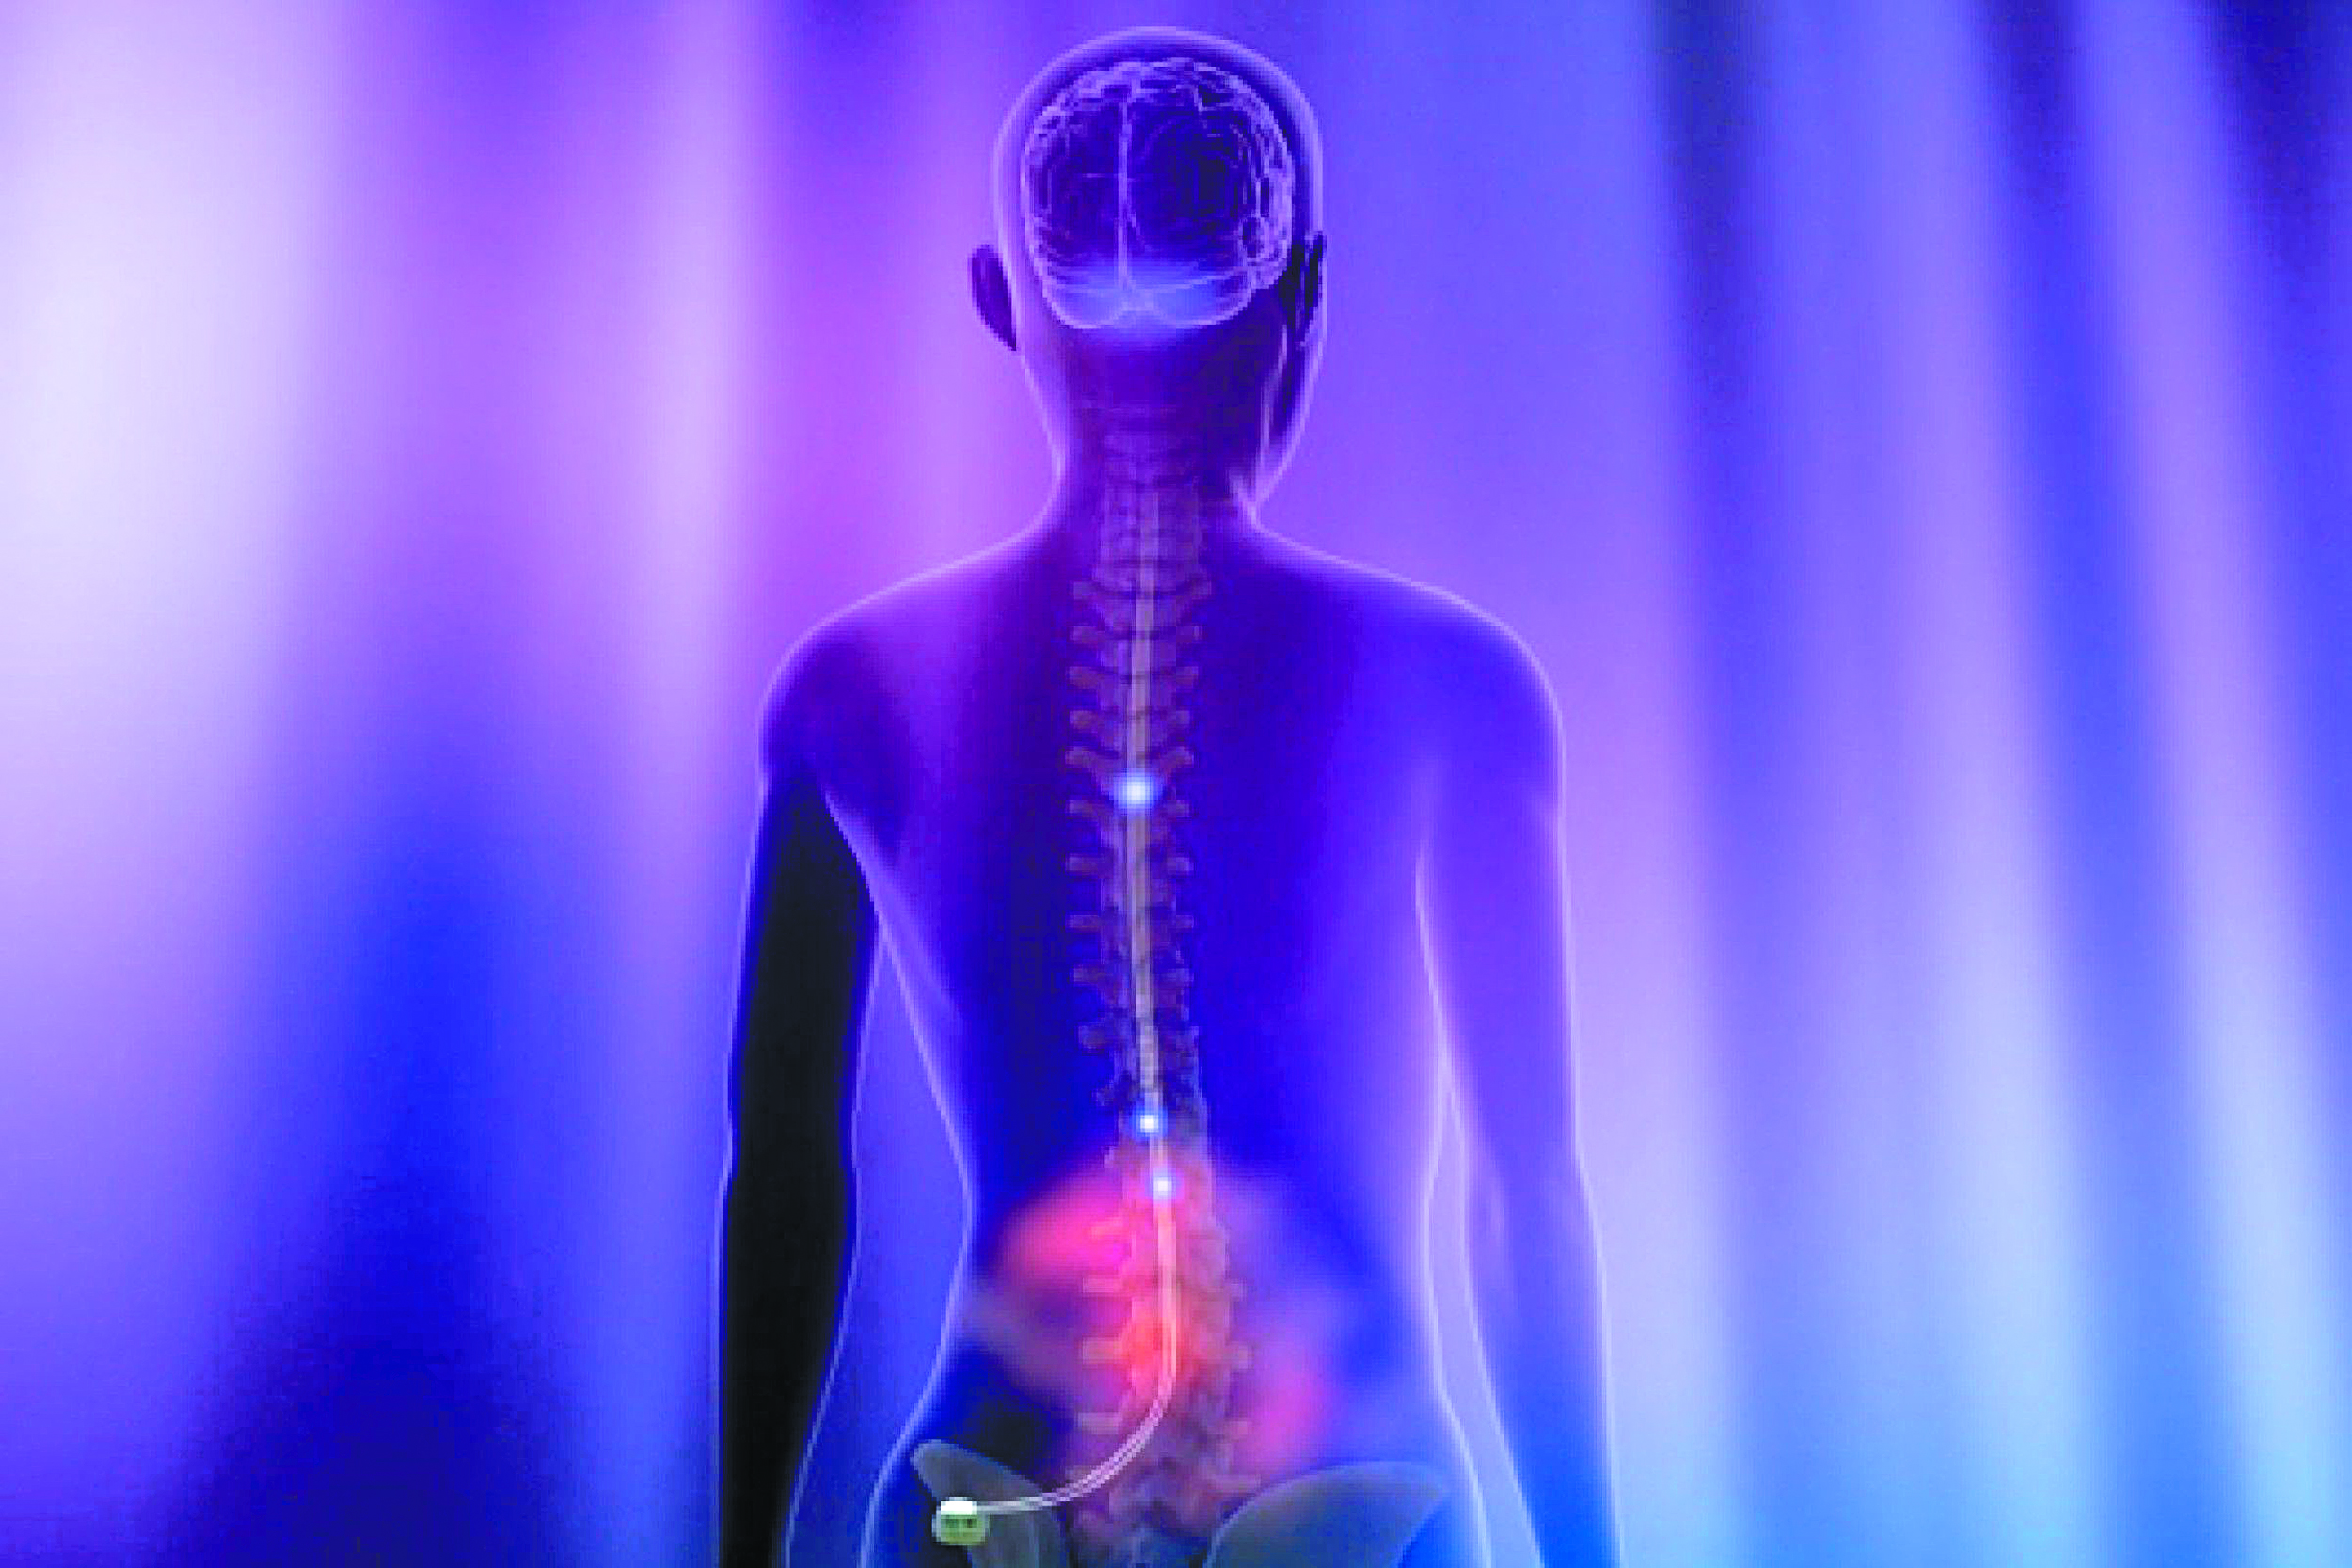 Ηλεκτρόδια εναντίον της νόσου του Crohn – Νέες ελπίδες από έλληνες επιστήμονες